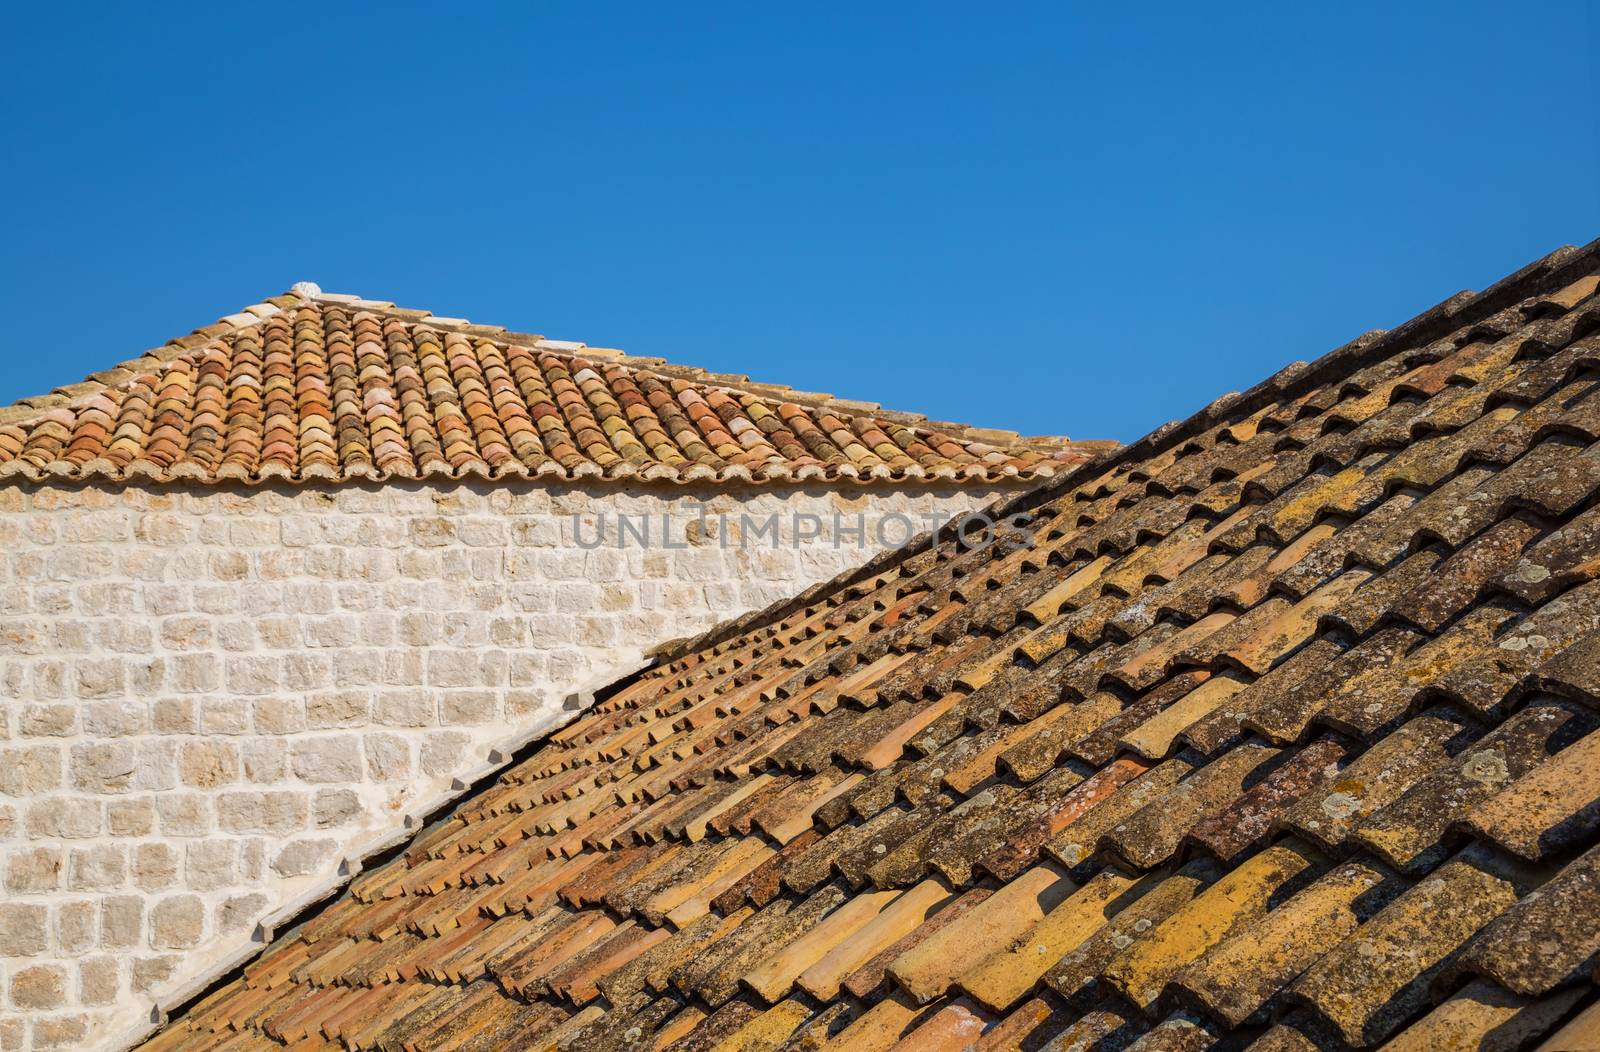 Roof tiles in Dubrovnik, Croatia by Sid10